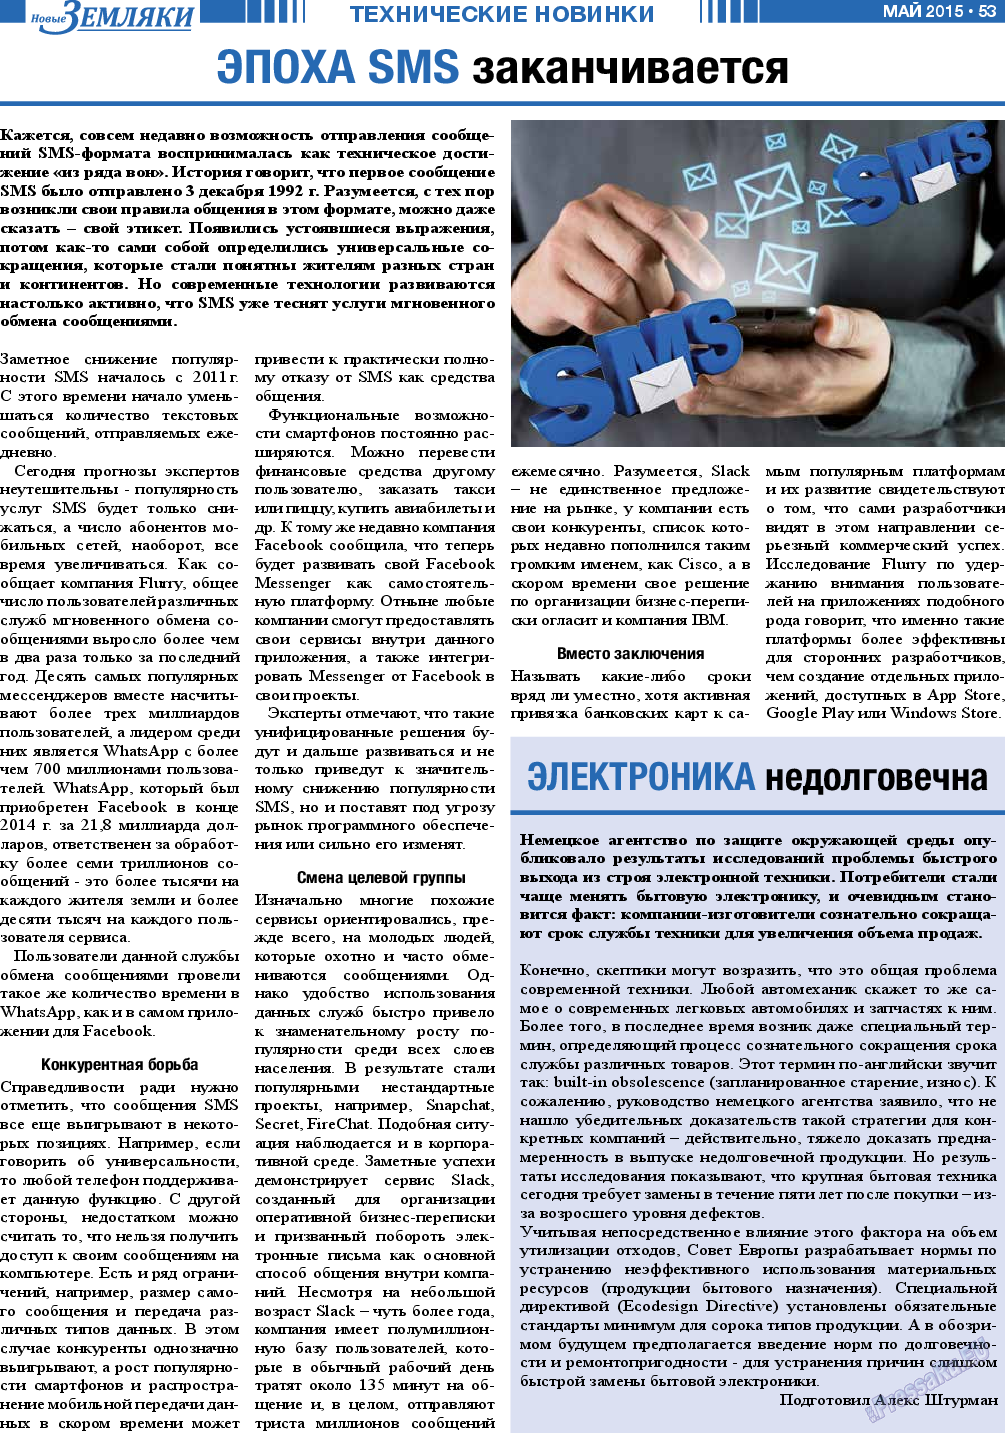 Новые Земляки, газета. 2015 №5 стр.53